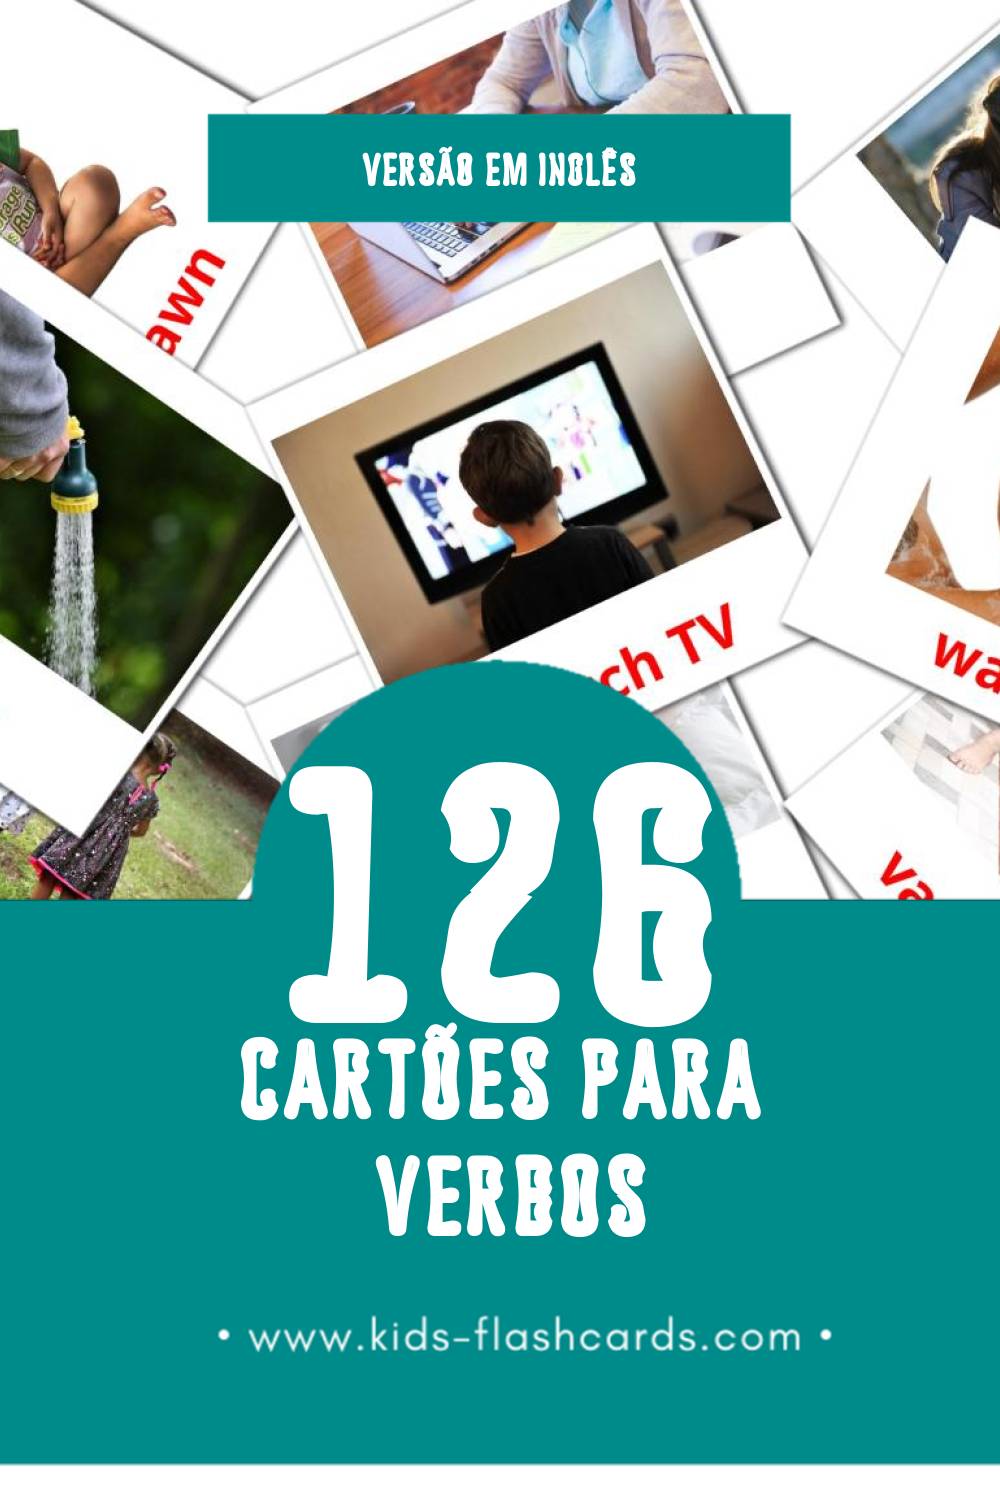 Flashcards de Verbs Visuais para Toddlers (132 cartões em Inglês)